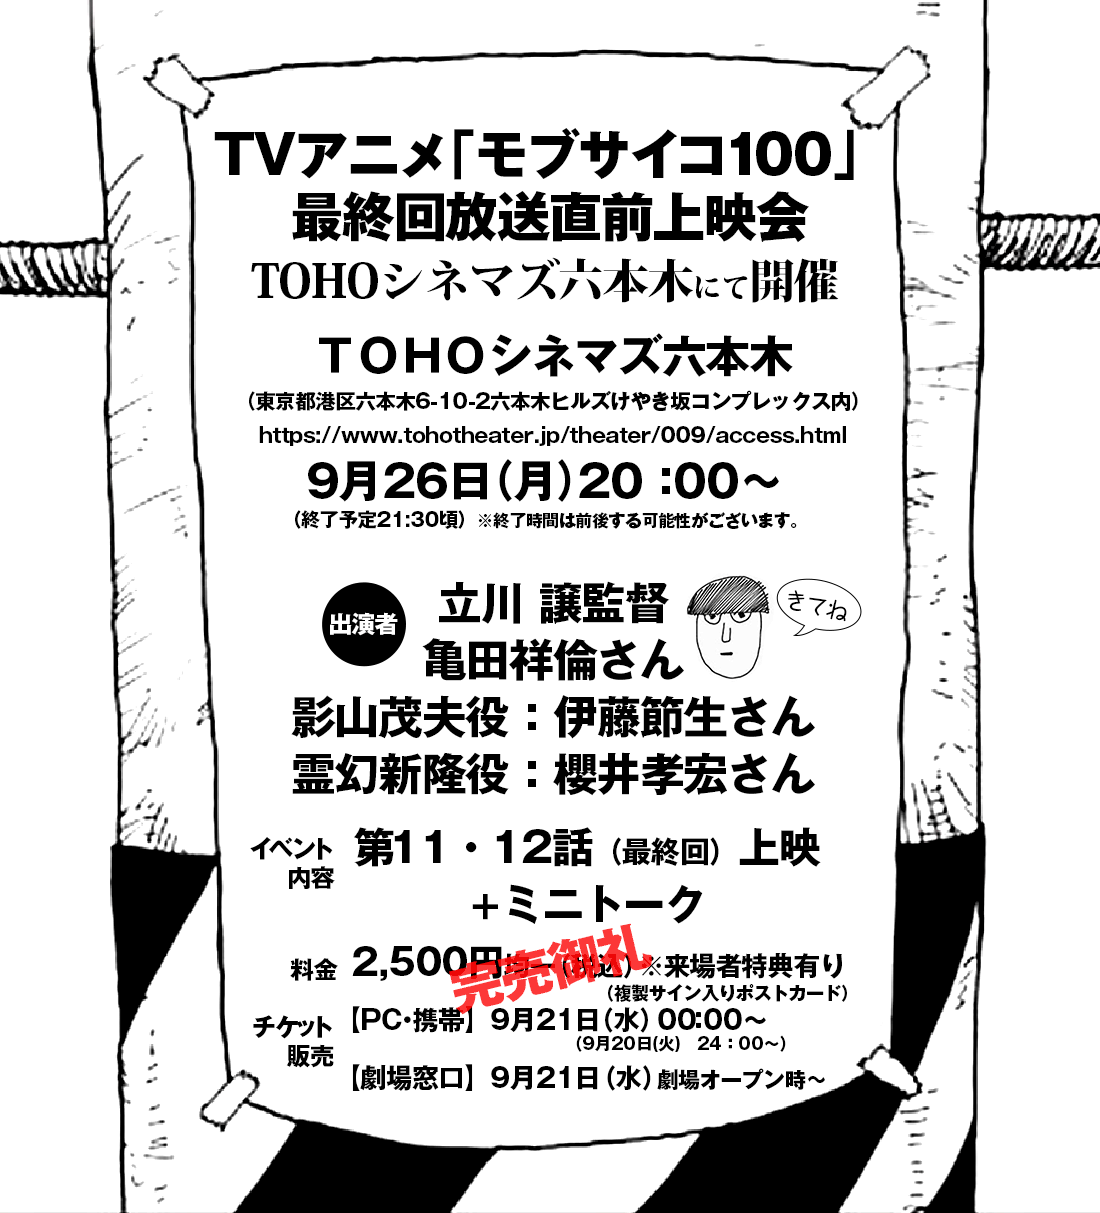 Special01 Tvアニメ モブサイコ100 公式サイト